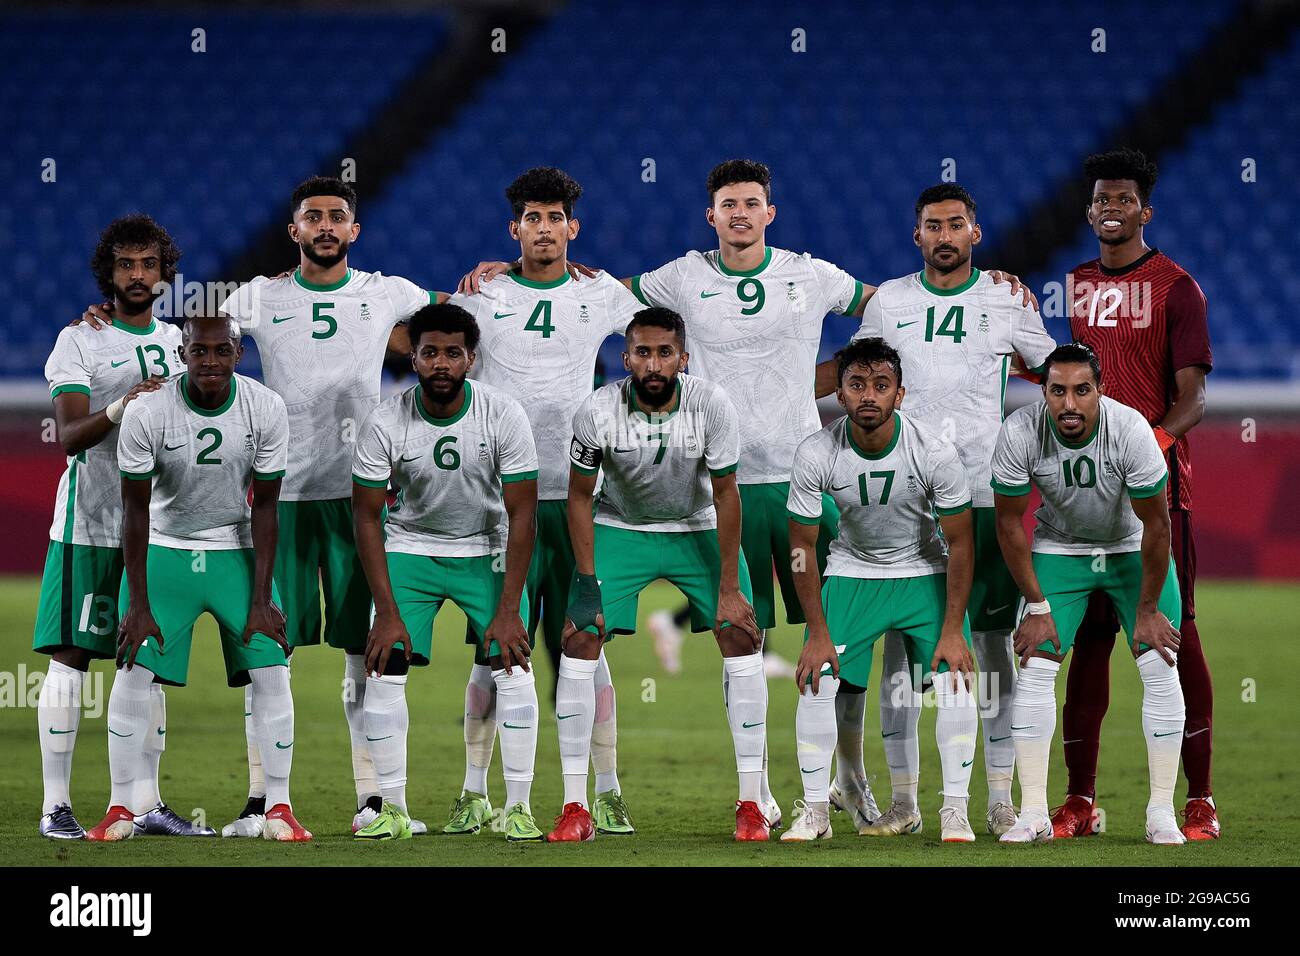 YOKOHAMA, JAPON - JUILLET 25 : l'équipe d'Arabie saoudite pose pour une photo d'équipe, de gauche à droite; Yasir Al Shahrani d'Arabie Saoudite, Abdelelah Al Amri d'Arabie Saoudite, Abdulbassit Al Hindi d'Arabie Saoudite, Abdullah Al Hamdan d'Arabie Saoudite, Ali Al Hassan d'Arabie Saoudite, Mohammed Al Yami d'Arabie Saoudite, première rangée; Saud Abdulhamid d'Arabie Saoudite, Sami Al Naji d'Arabie Saoudite, Salman Al Faraj d'Arabie Saoudite, Ayman Al Khulaif d'Arabie Saoudite et Salem Al Dawsari d'Arabie Saoudite lors du match du Tournoi de football olympique de Tokyo 2020 entre l'Arabie Saoudite et l'Allemagne au Nissan Stadium o Banque D'Images